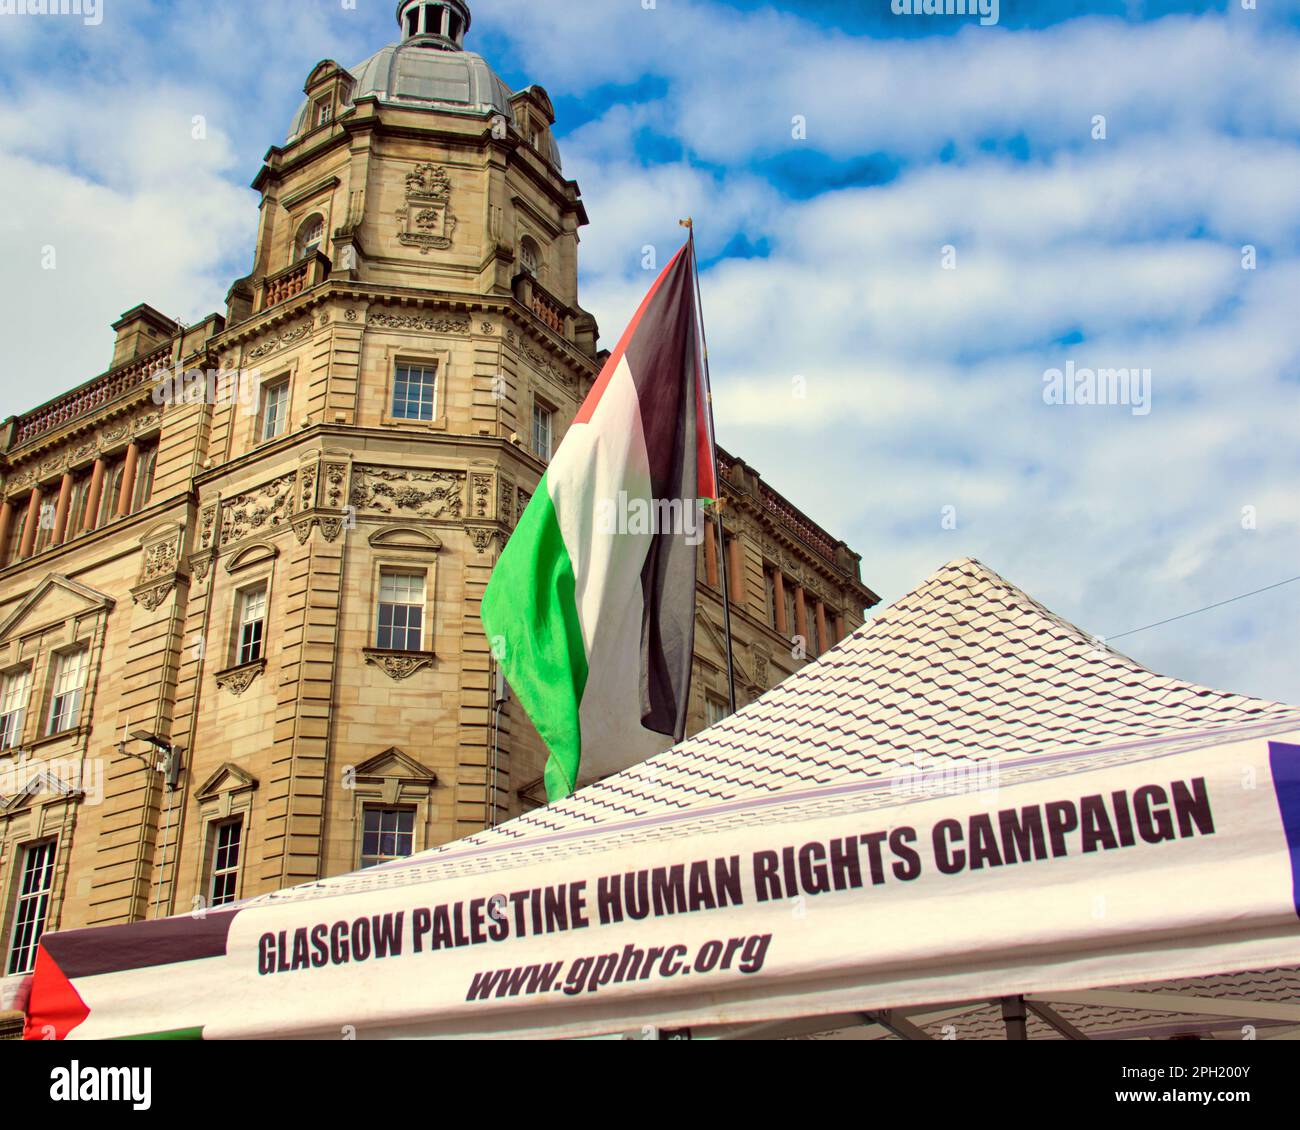 la campagne de glasgow pour les droits de l'homme en palestine est au point mort Banque D'Images